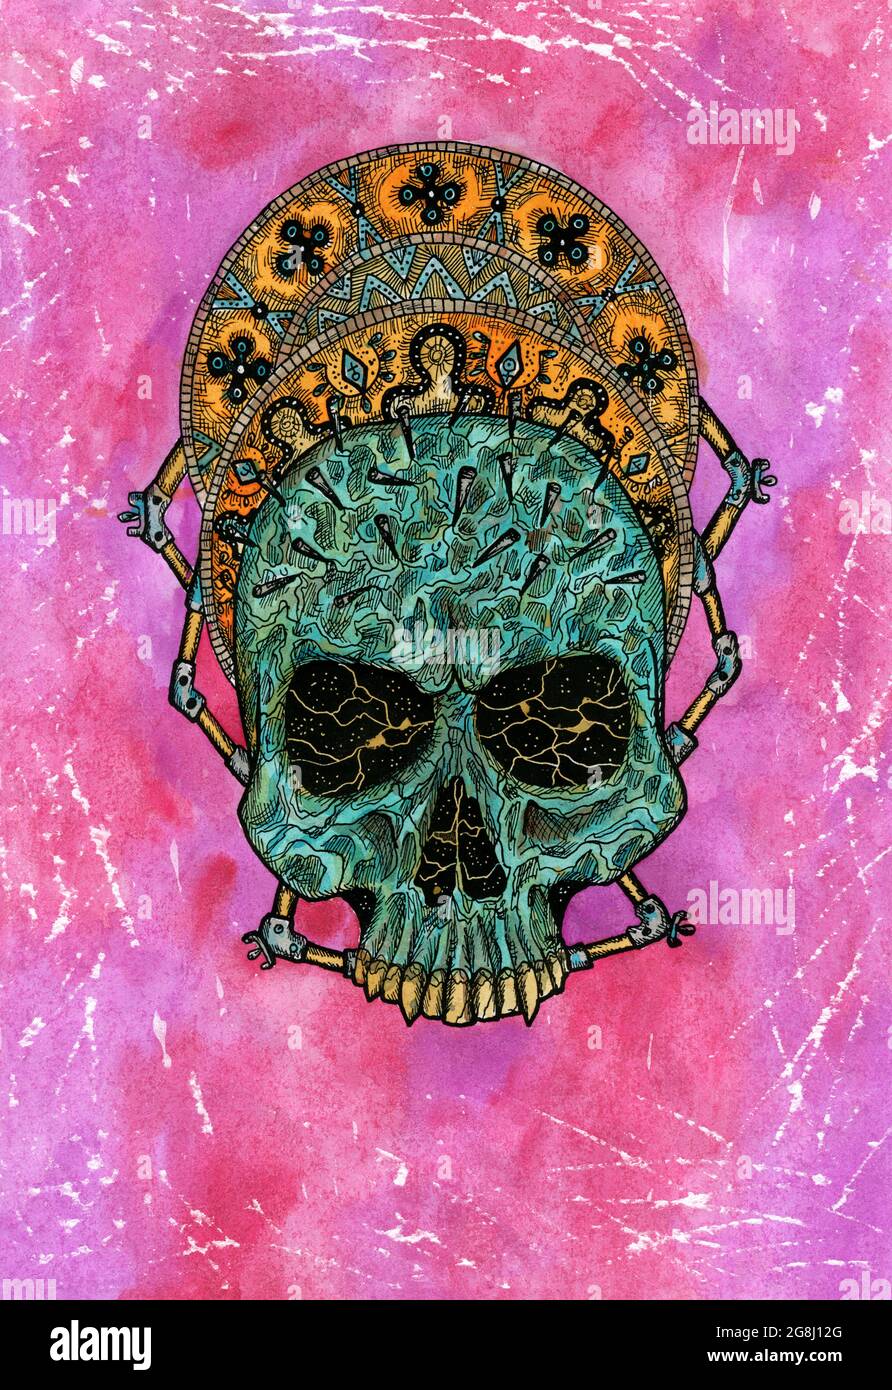 Illustration aquarelle stylisée d'un crâne créepé sur fond de grunge rose. Dessin mystique pour Halloween avec concept ésotérique, gothique, occulte Banque D'Images